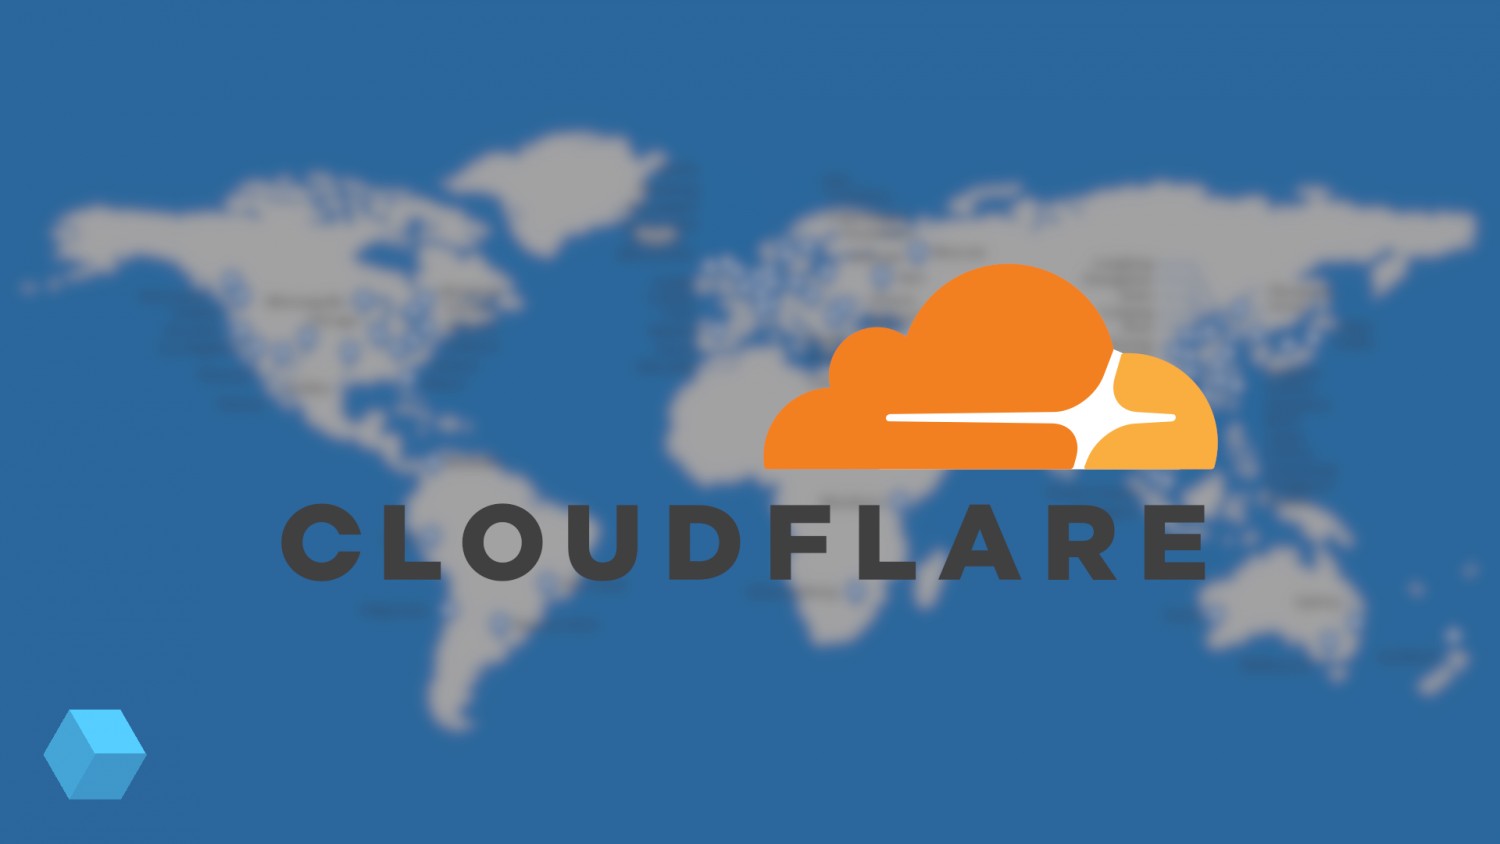 У CDN-сервиса Cloudflare сбой: многие сайты работают нестабильно